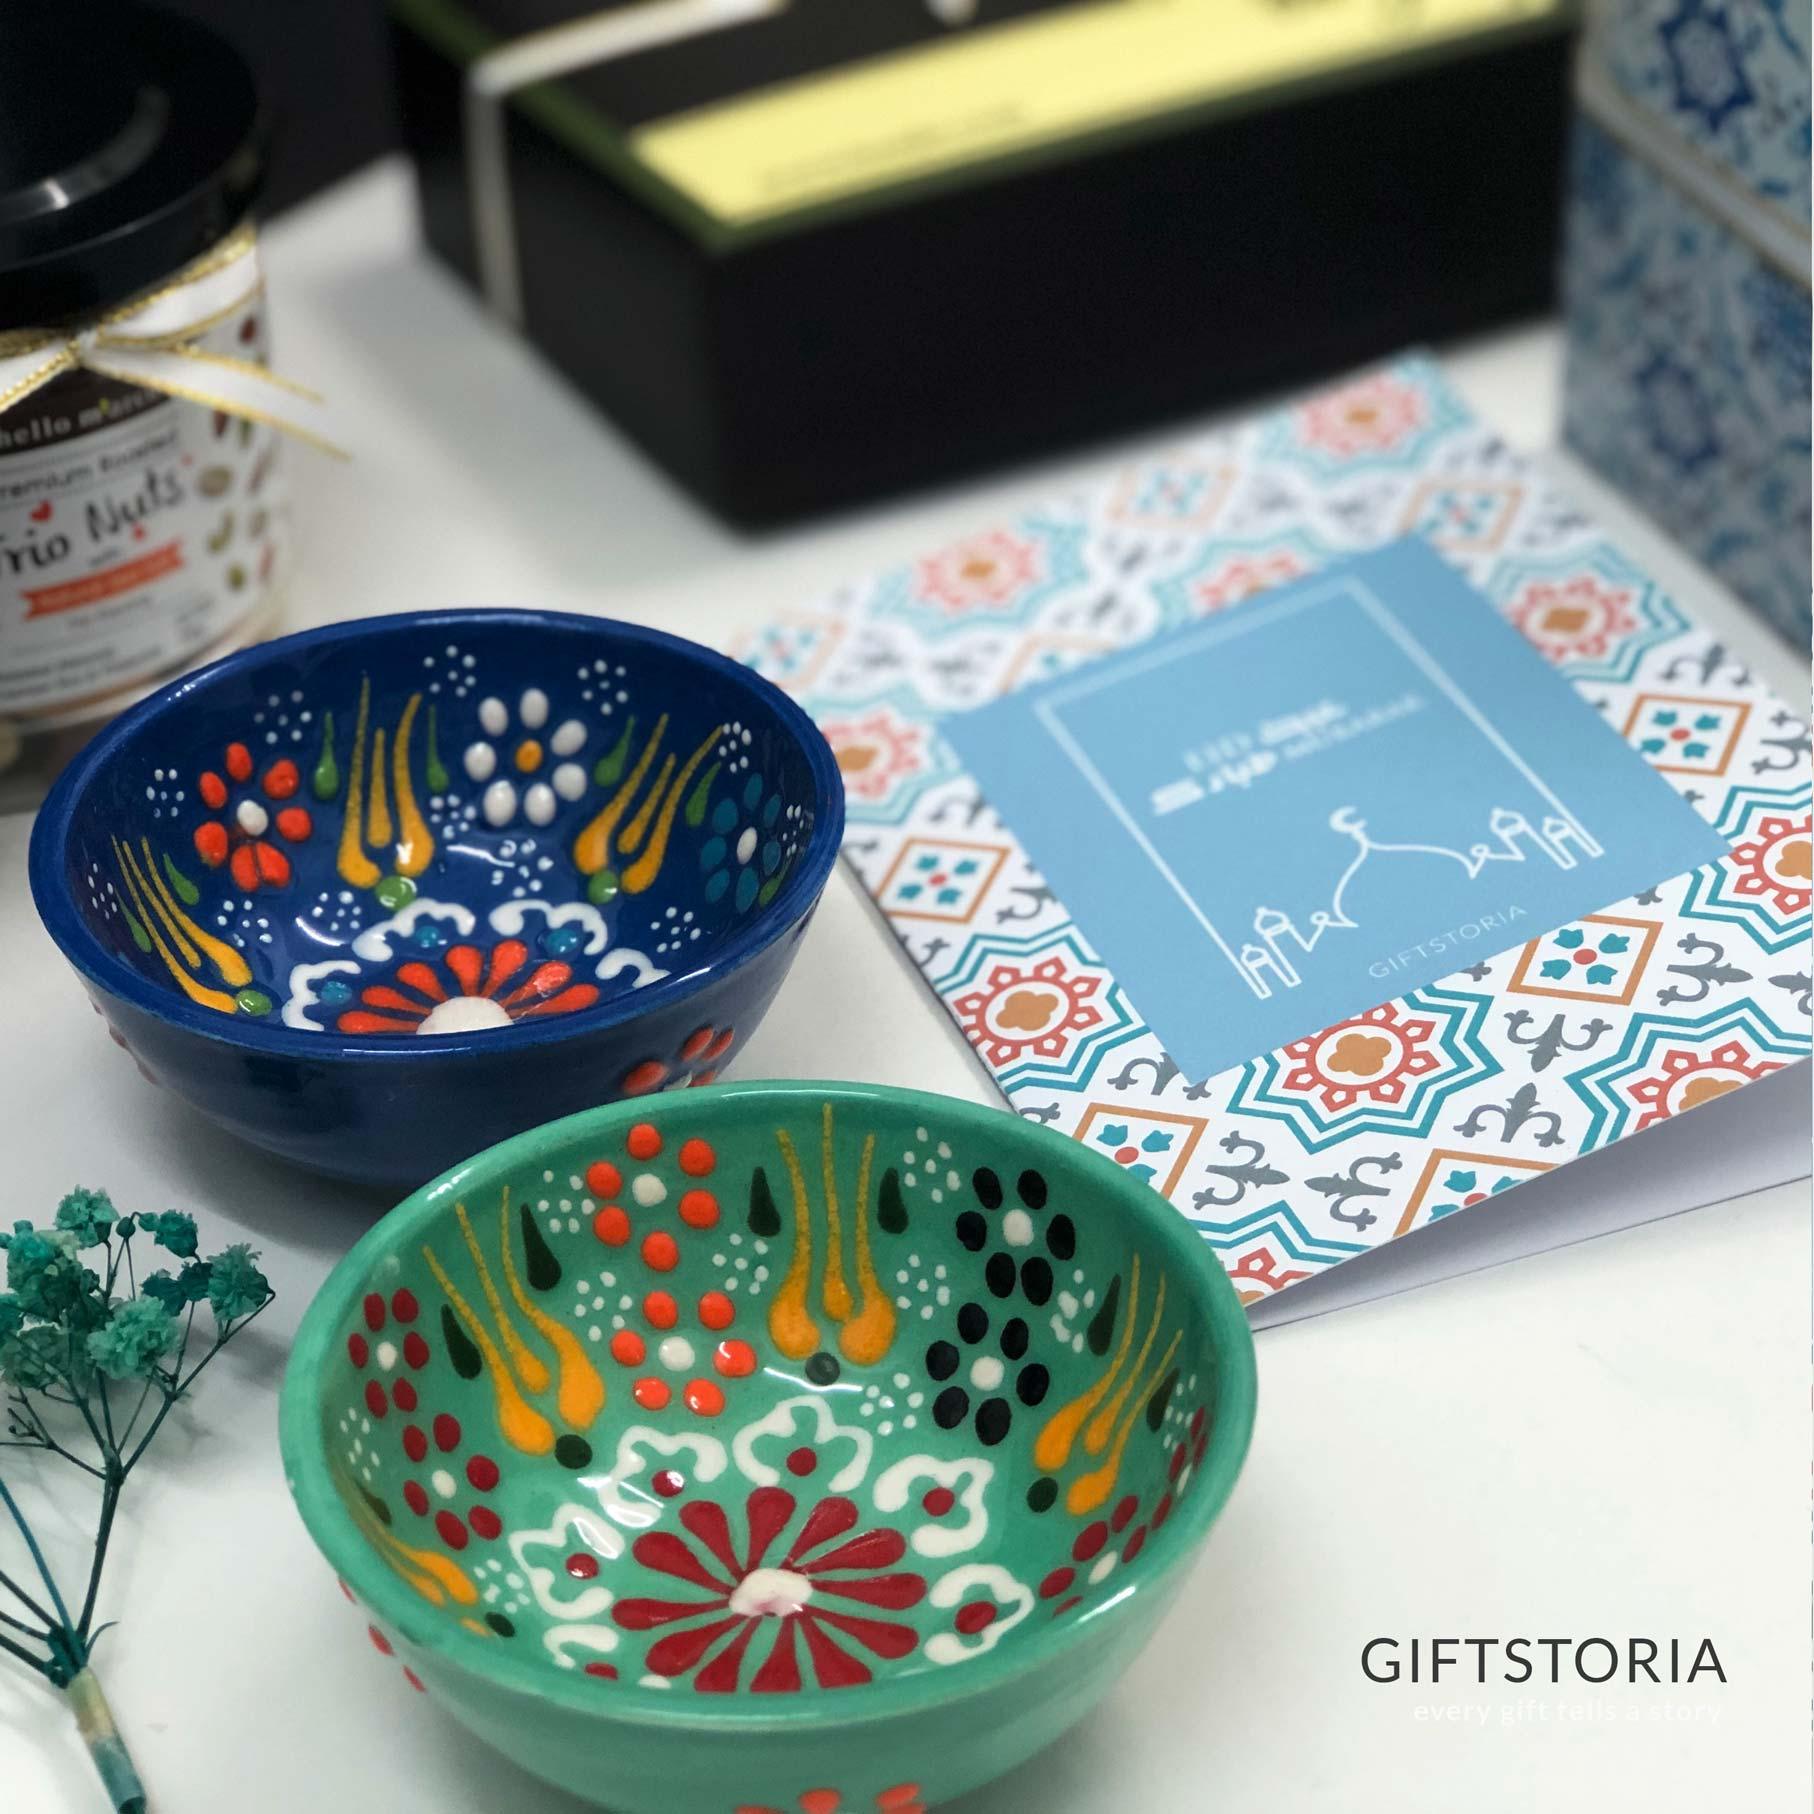 Ceria Aidilfitri Gift Box - Hari Raya - GiftStoria.com